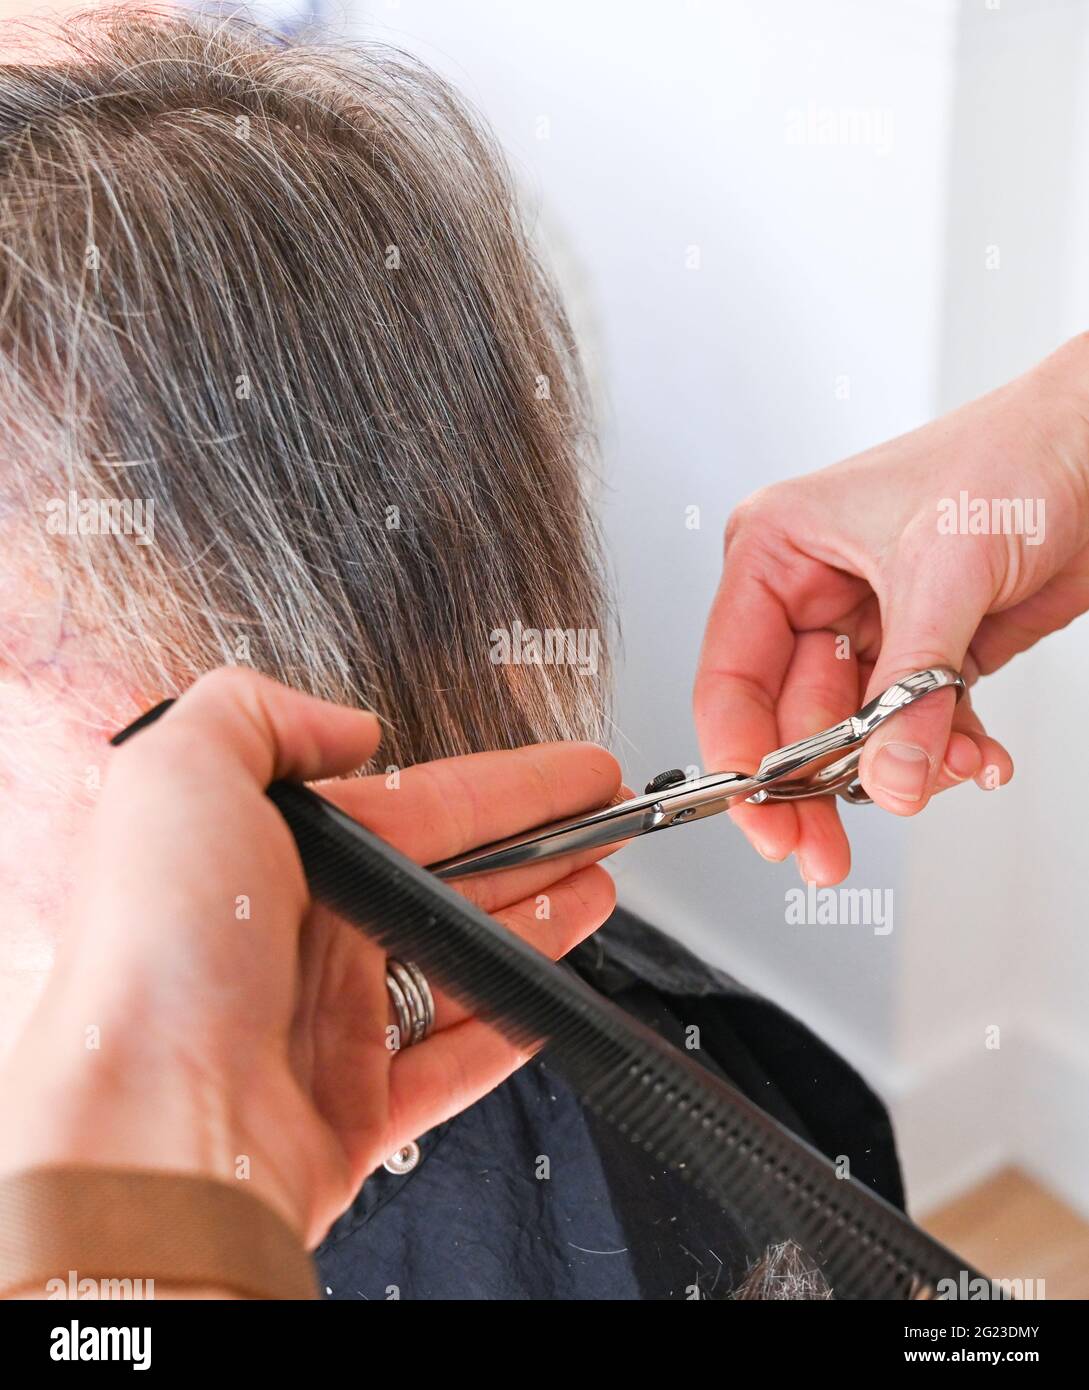 La femme retraité de la vieillesse dans ses années 80 a ses cheveux coupés et stylisés par coiffeur Banque D'Images